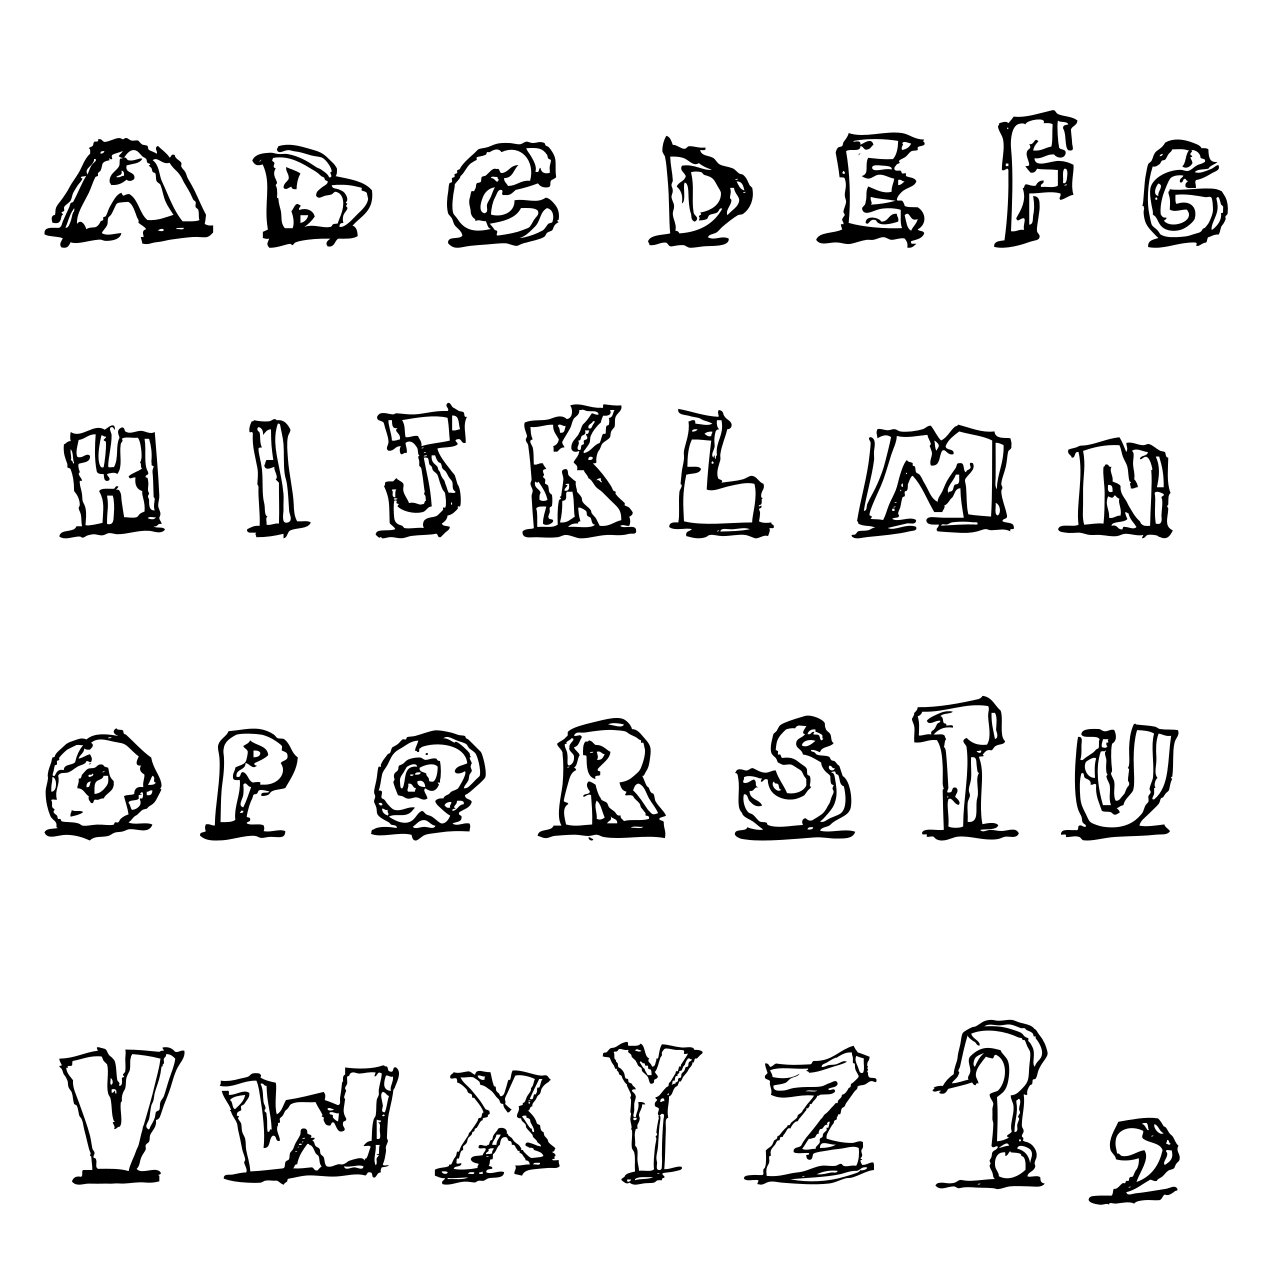 Omalovnka abeceda k vytisknut na A4